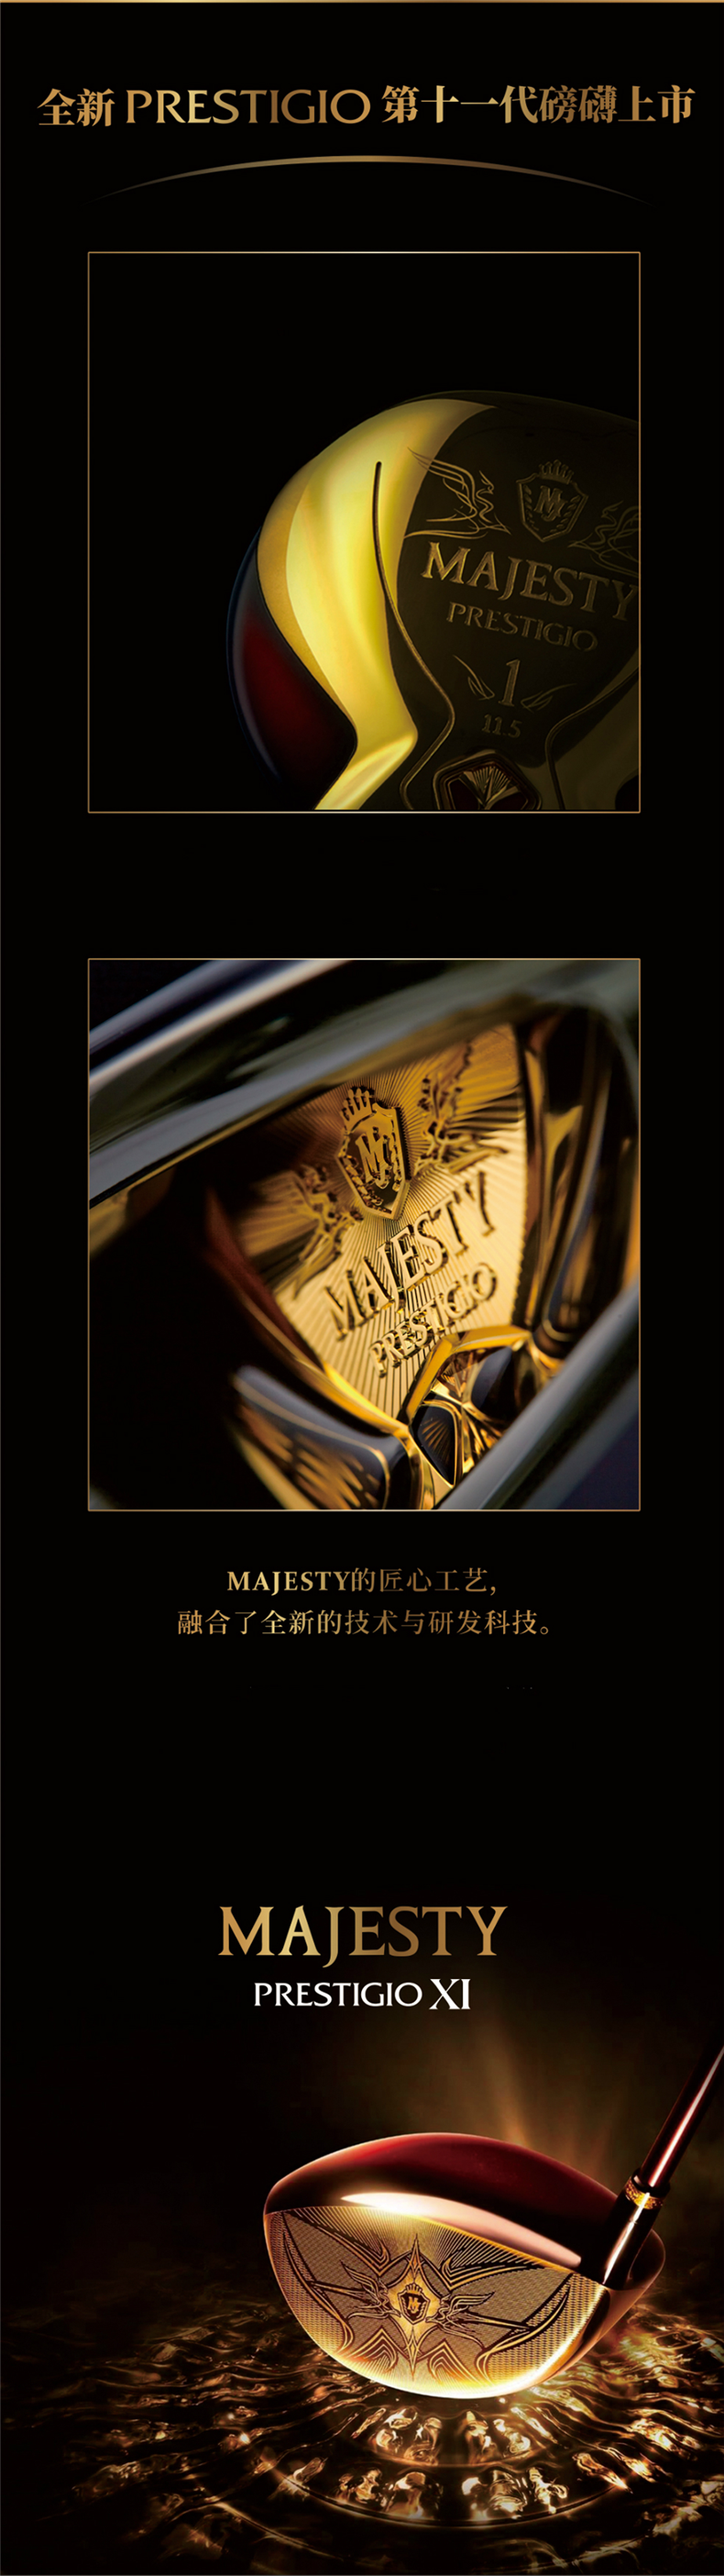 【新品】MAJESTY玛嘉斯帝日本高尔夫球杆女士PRESTIGIO XI一号木